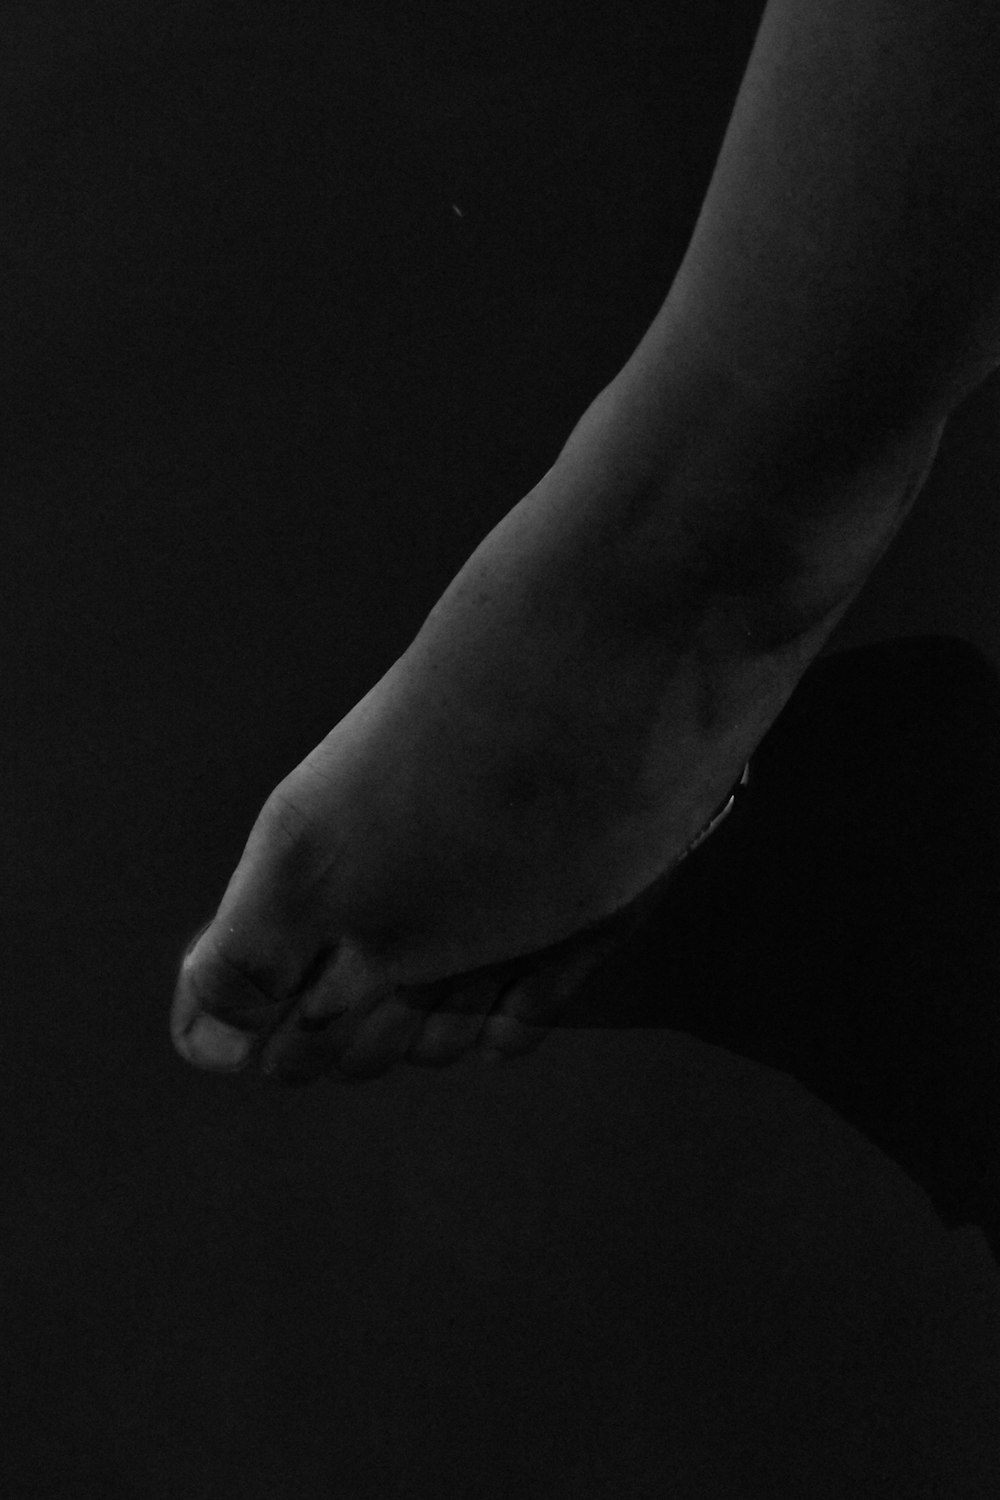 une photo en noir et blanc du pied d’une personne